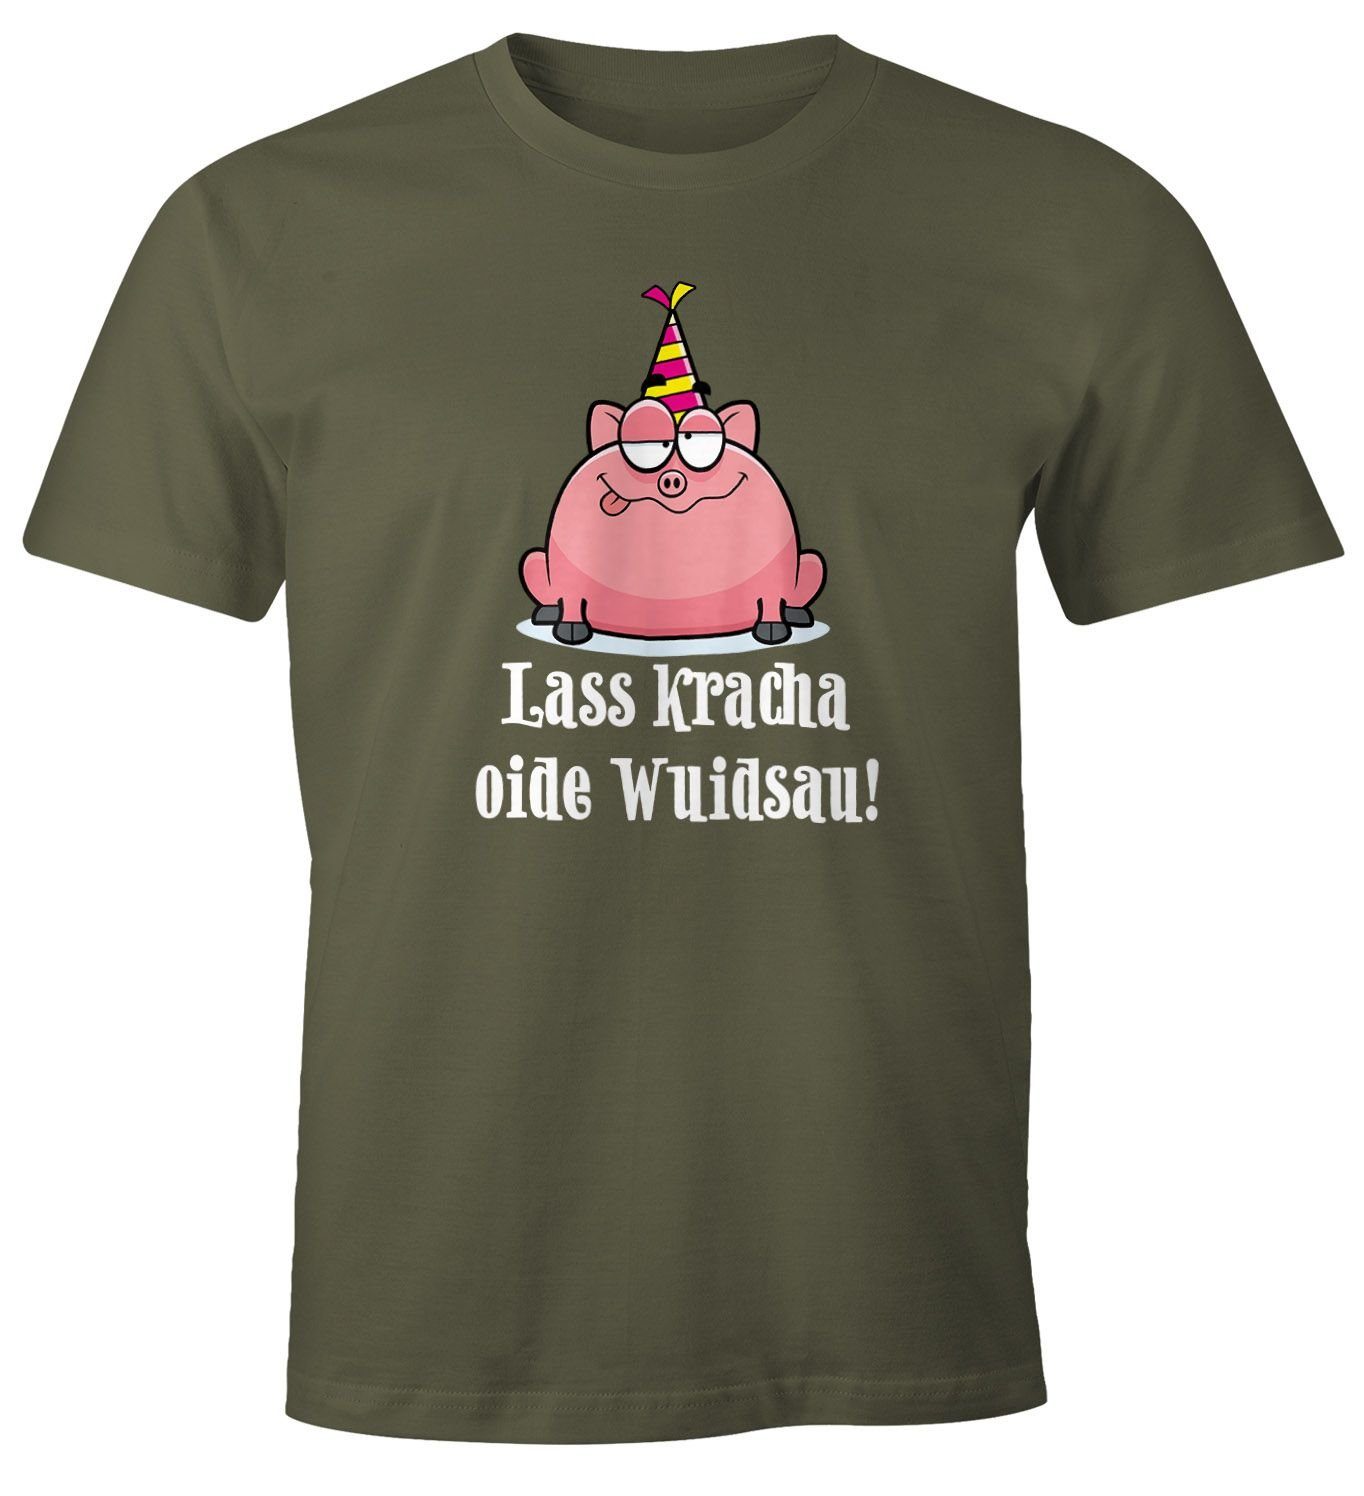 MoonWorks Print-Shirt Herren T-Shirt Geburtstag Schwein Spruch Lass kracha oide Wuidsau Fun-Shirt Geschenk Moonworks® mit Print grün